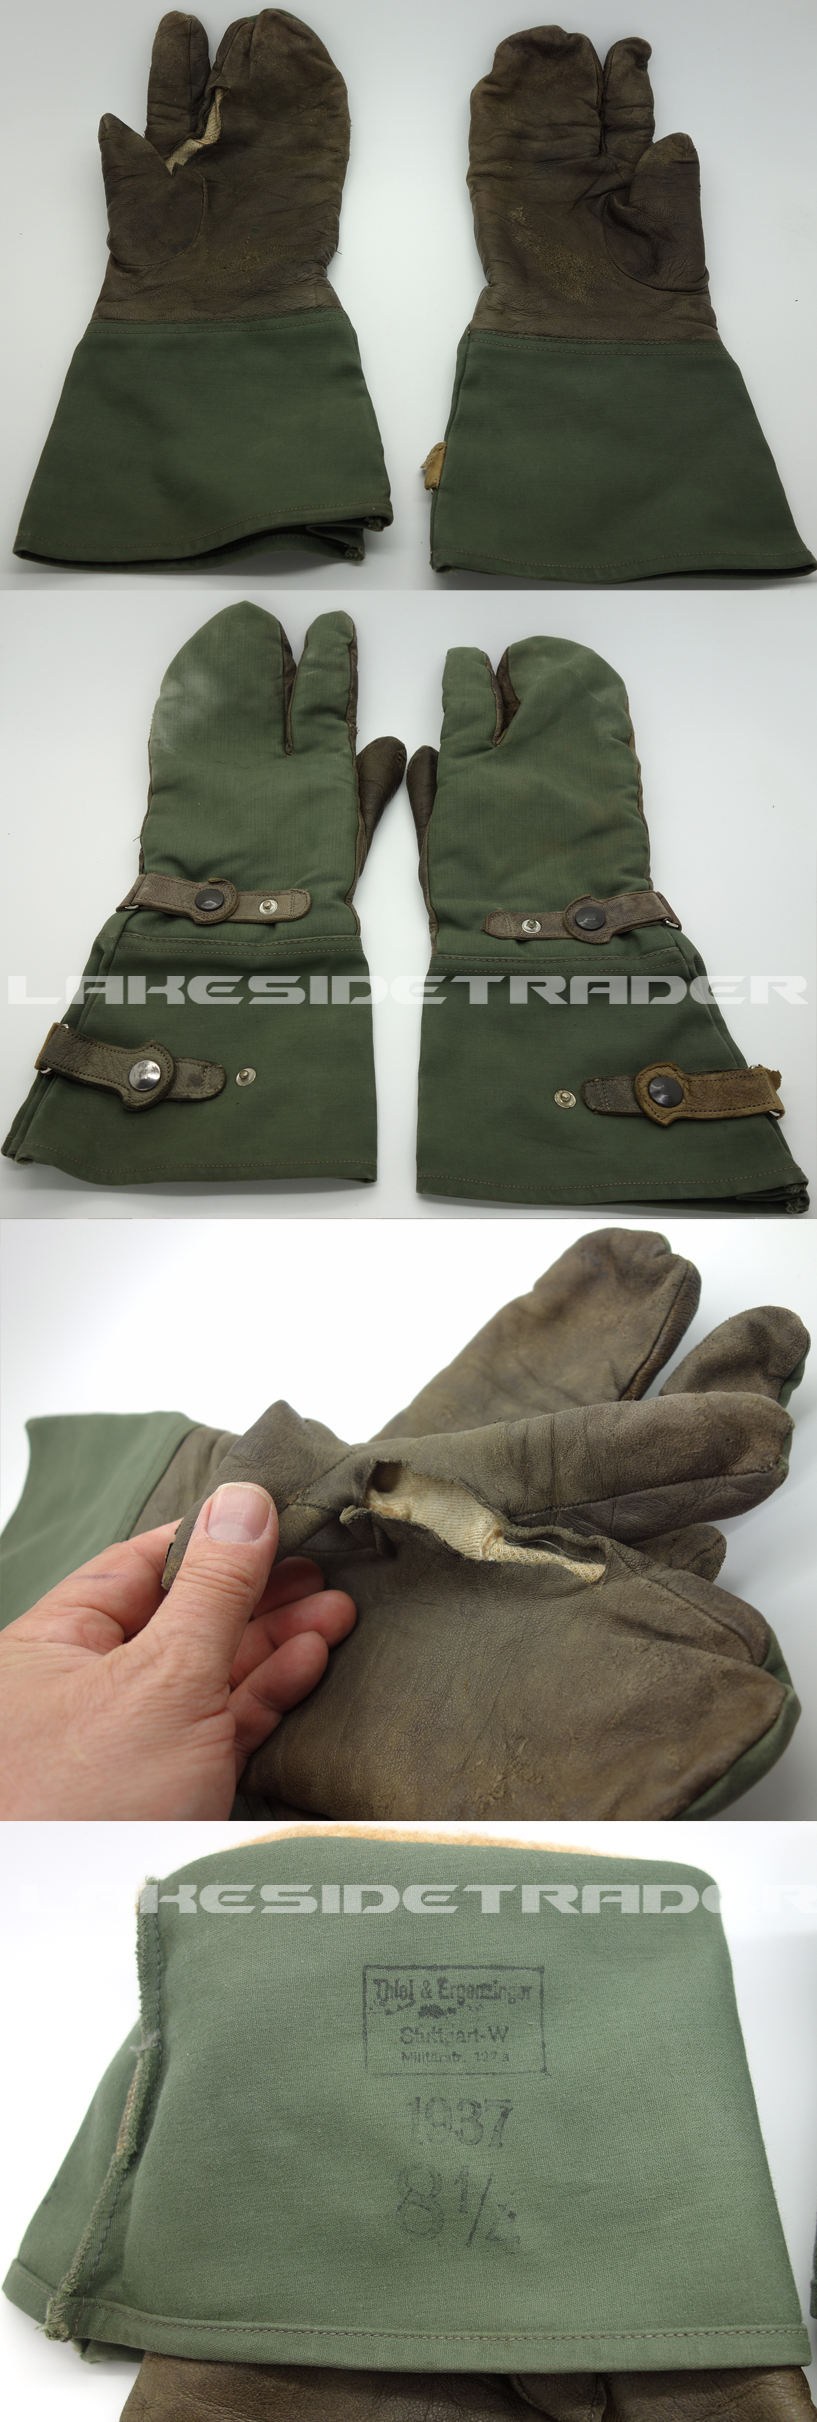 Motorcyclist’s/Dispatch Rider’s Gloves